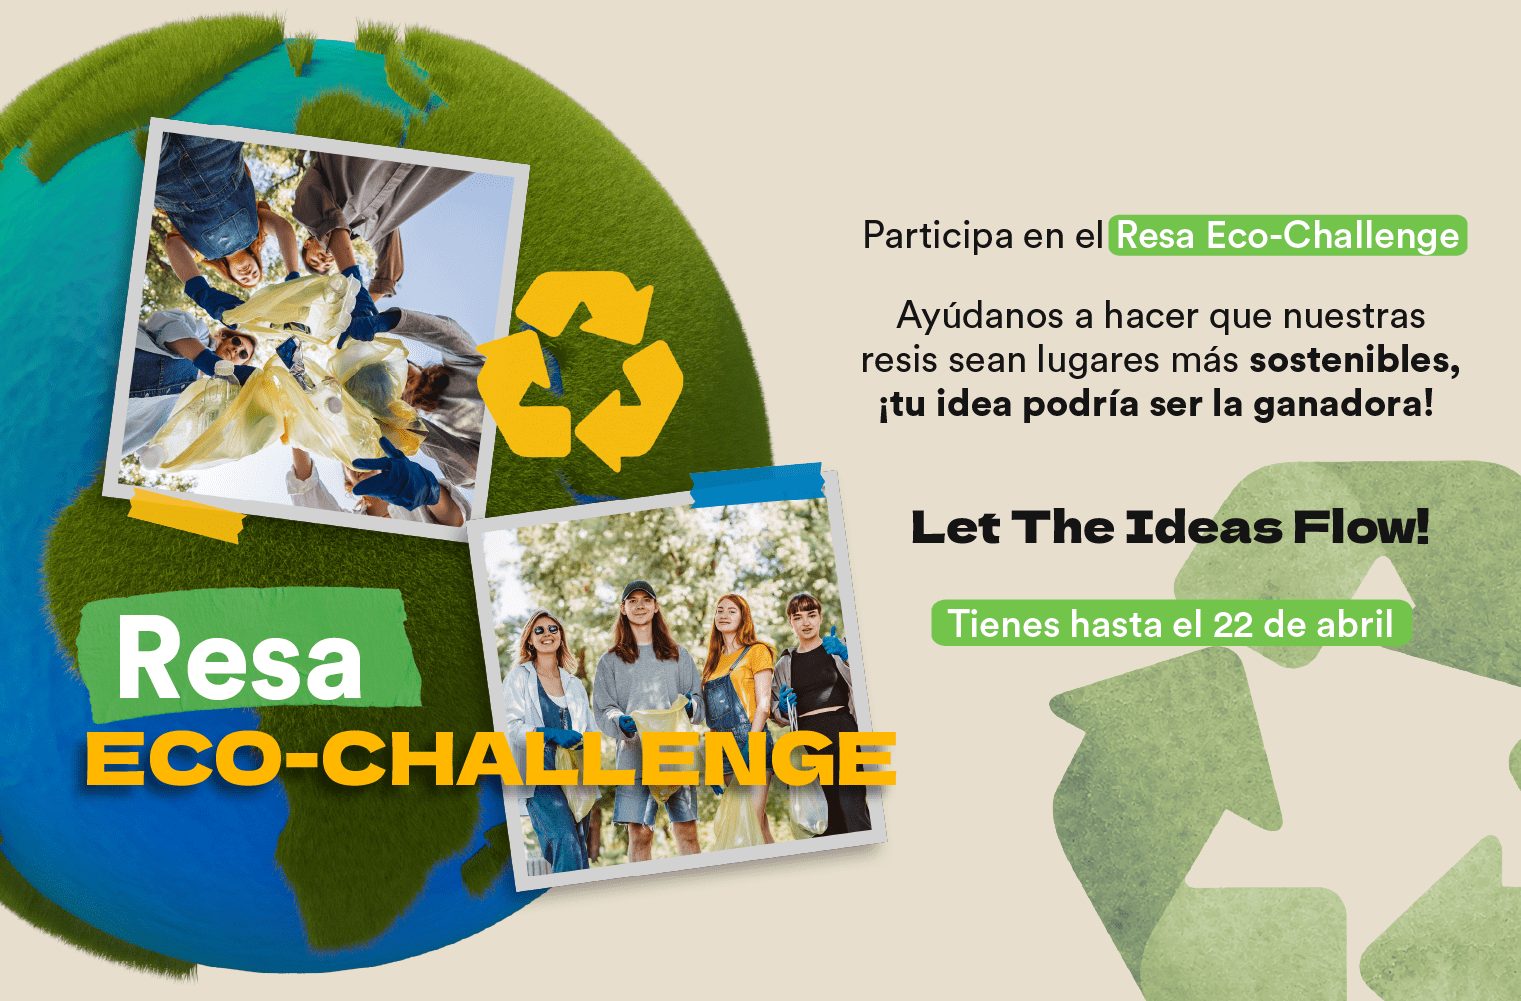 Resa Eco-Challenge: Let your ideas flow